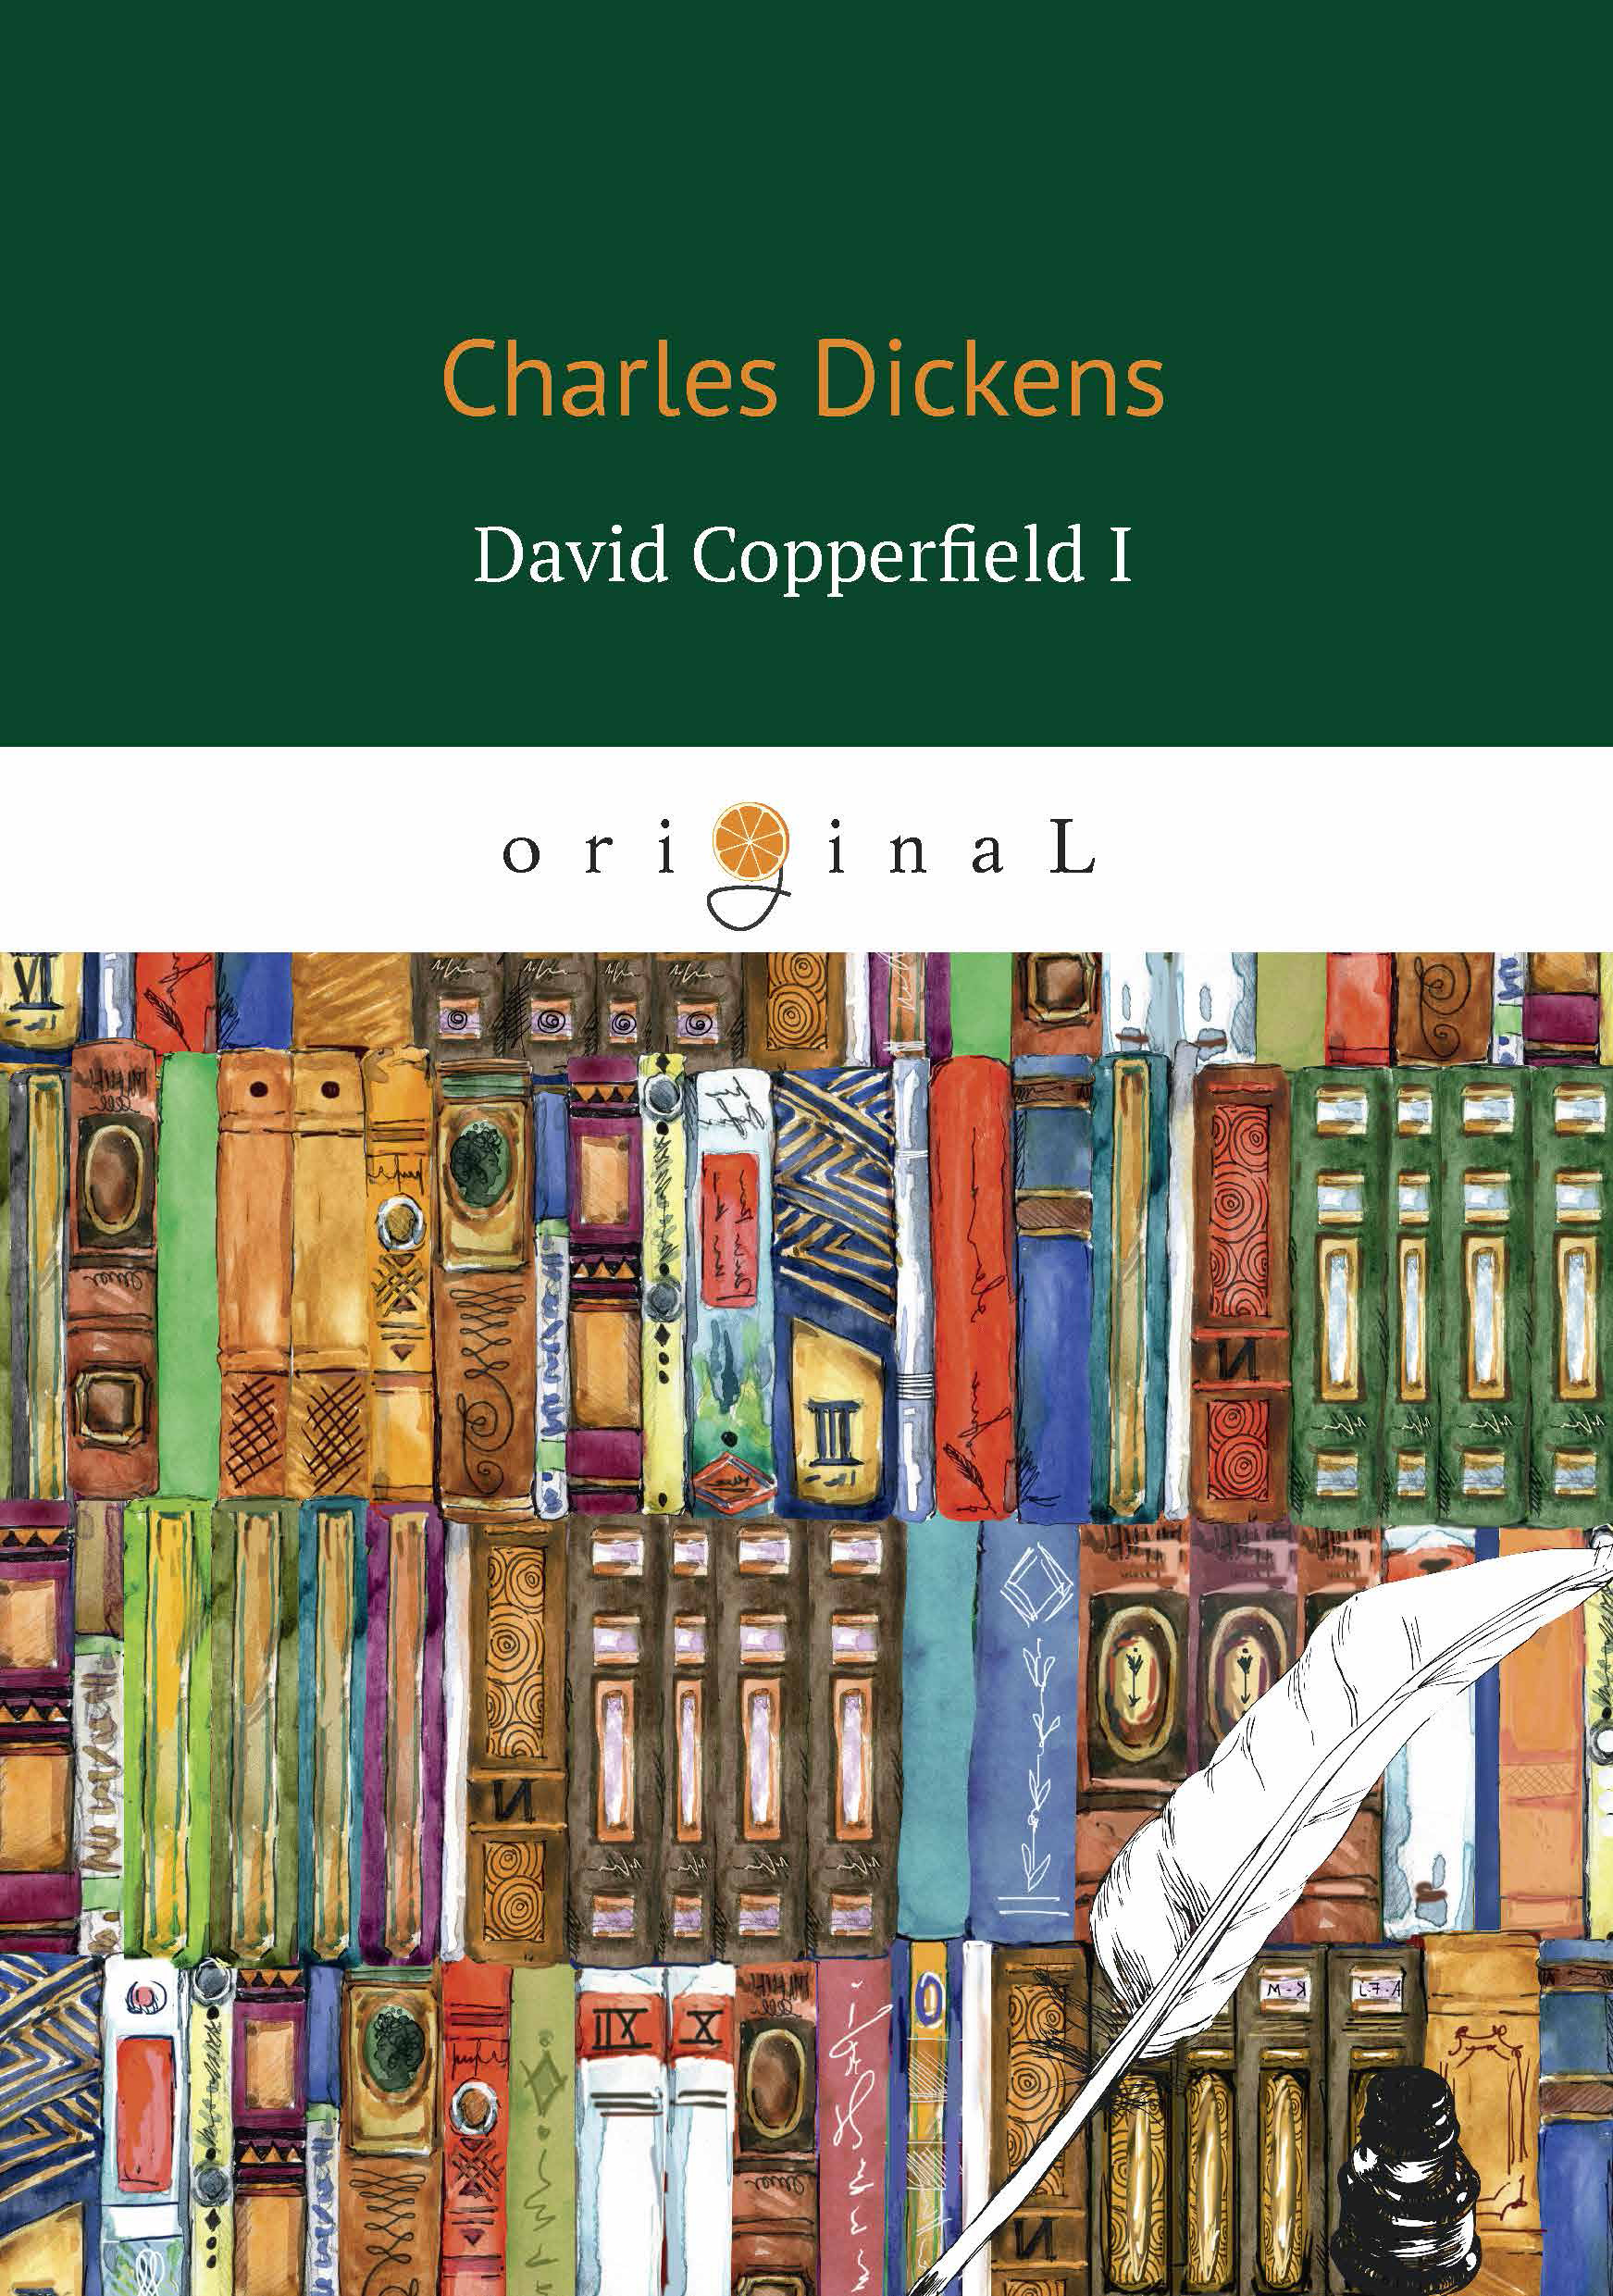 Книга David Copperfield I из серии , созданная Чарльз Диккенс, может относится к жанру Литература 19 века, Зарубежная классика. Стоимость электронной книги David Copperfield I с идентификатором 133203 составляет 199.00 руб.